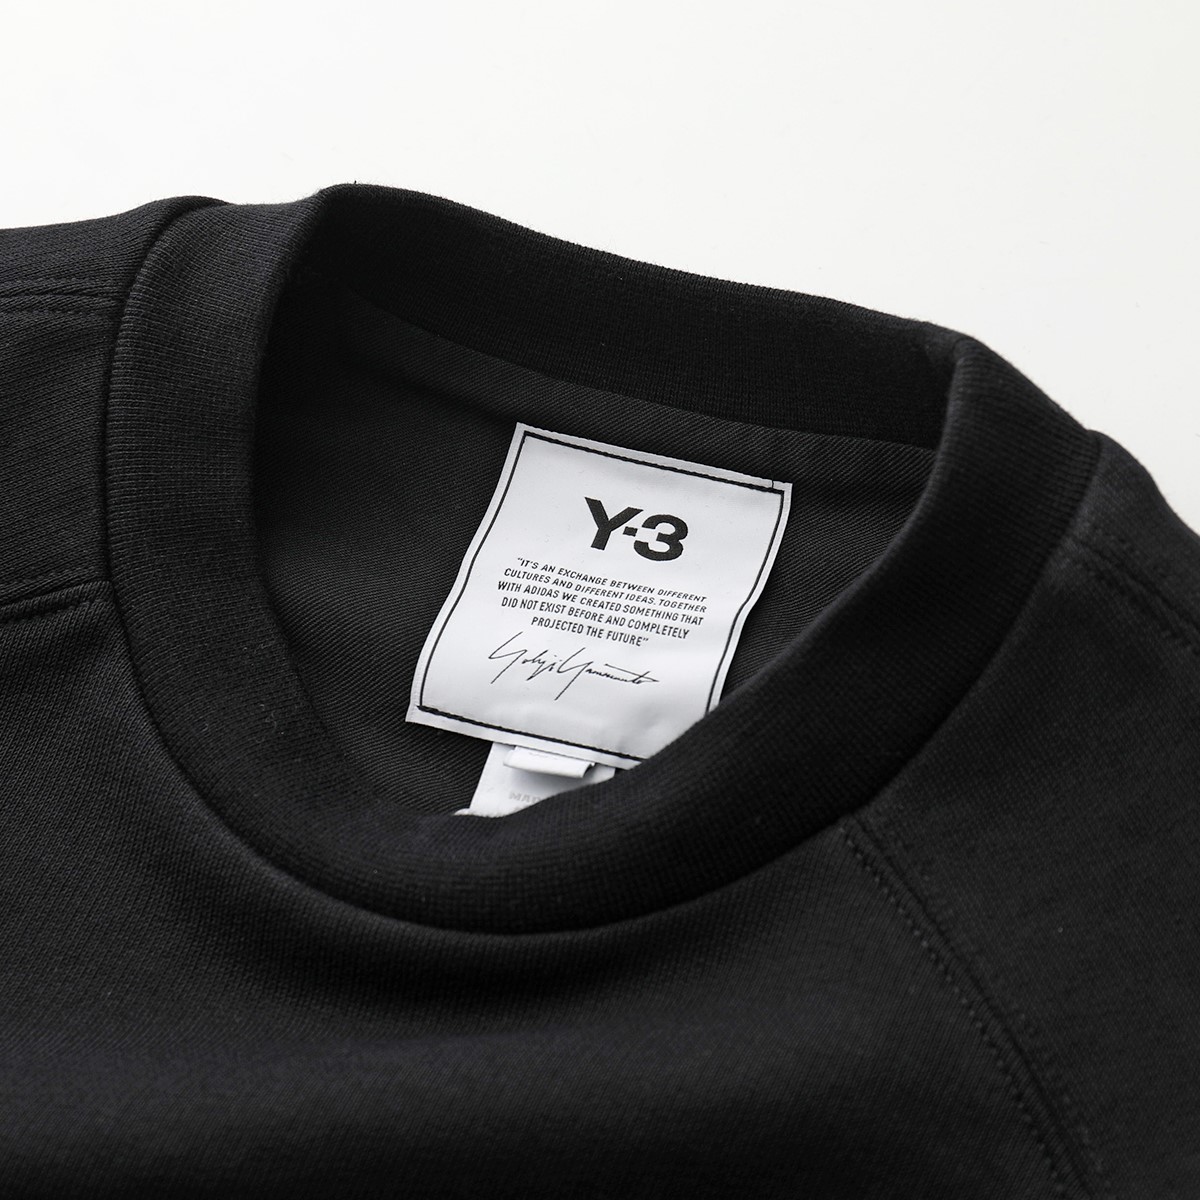 Y-3 ワイスリー adidas アディダス YOHJI YAMAMOTO GV0336 クルーネック オーバーサイズ スウェット トレーナー ロゴ  BLACK レディース【cp_fifte】 | インポートセレクト musee